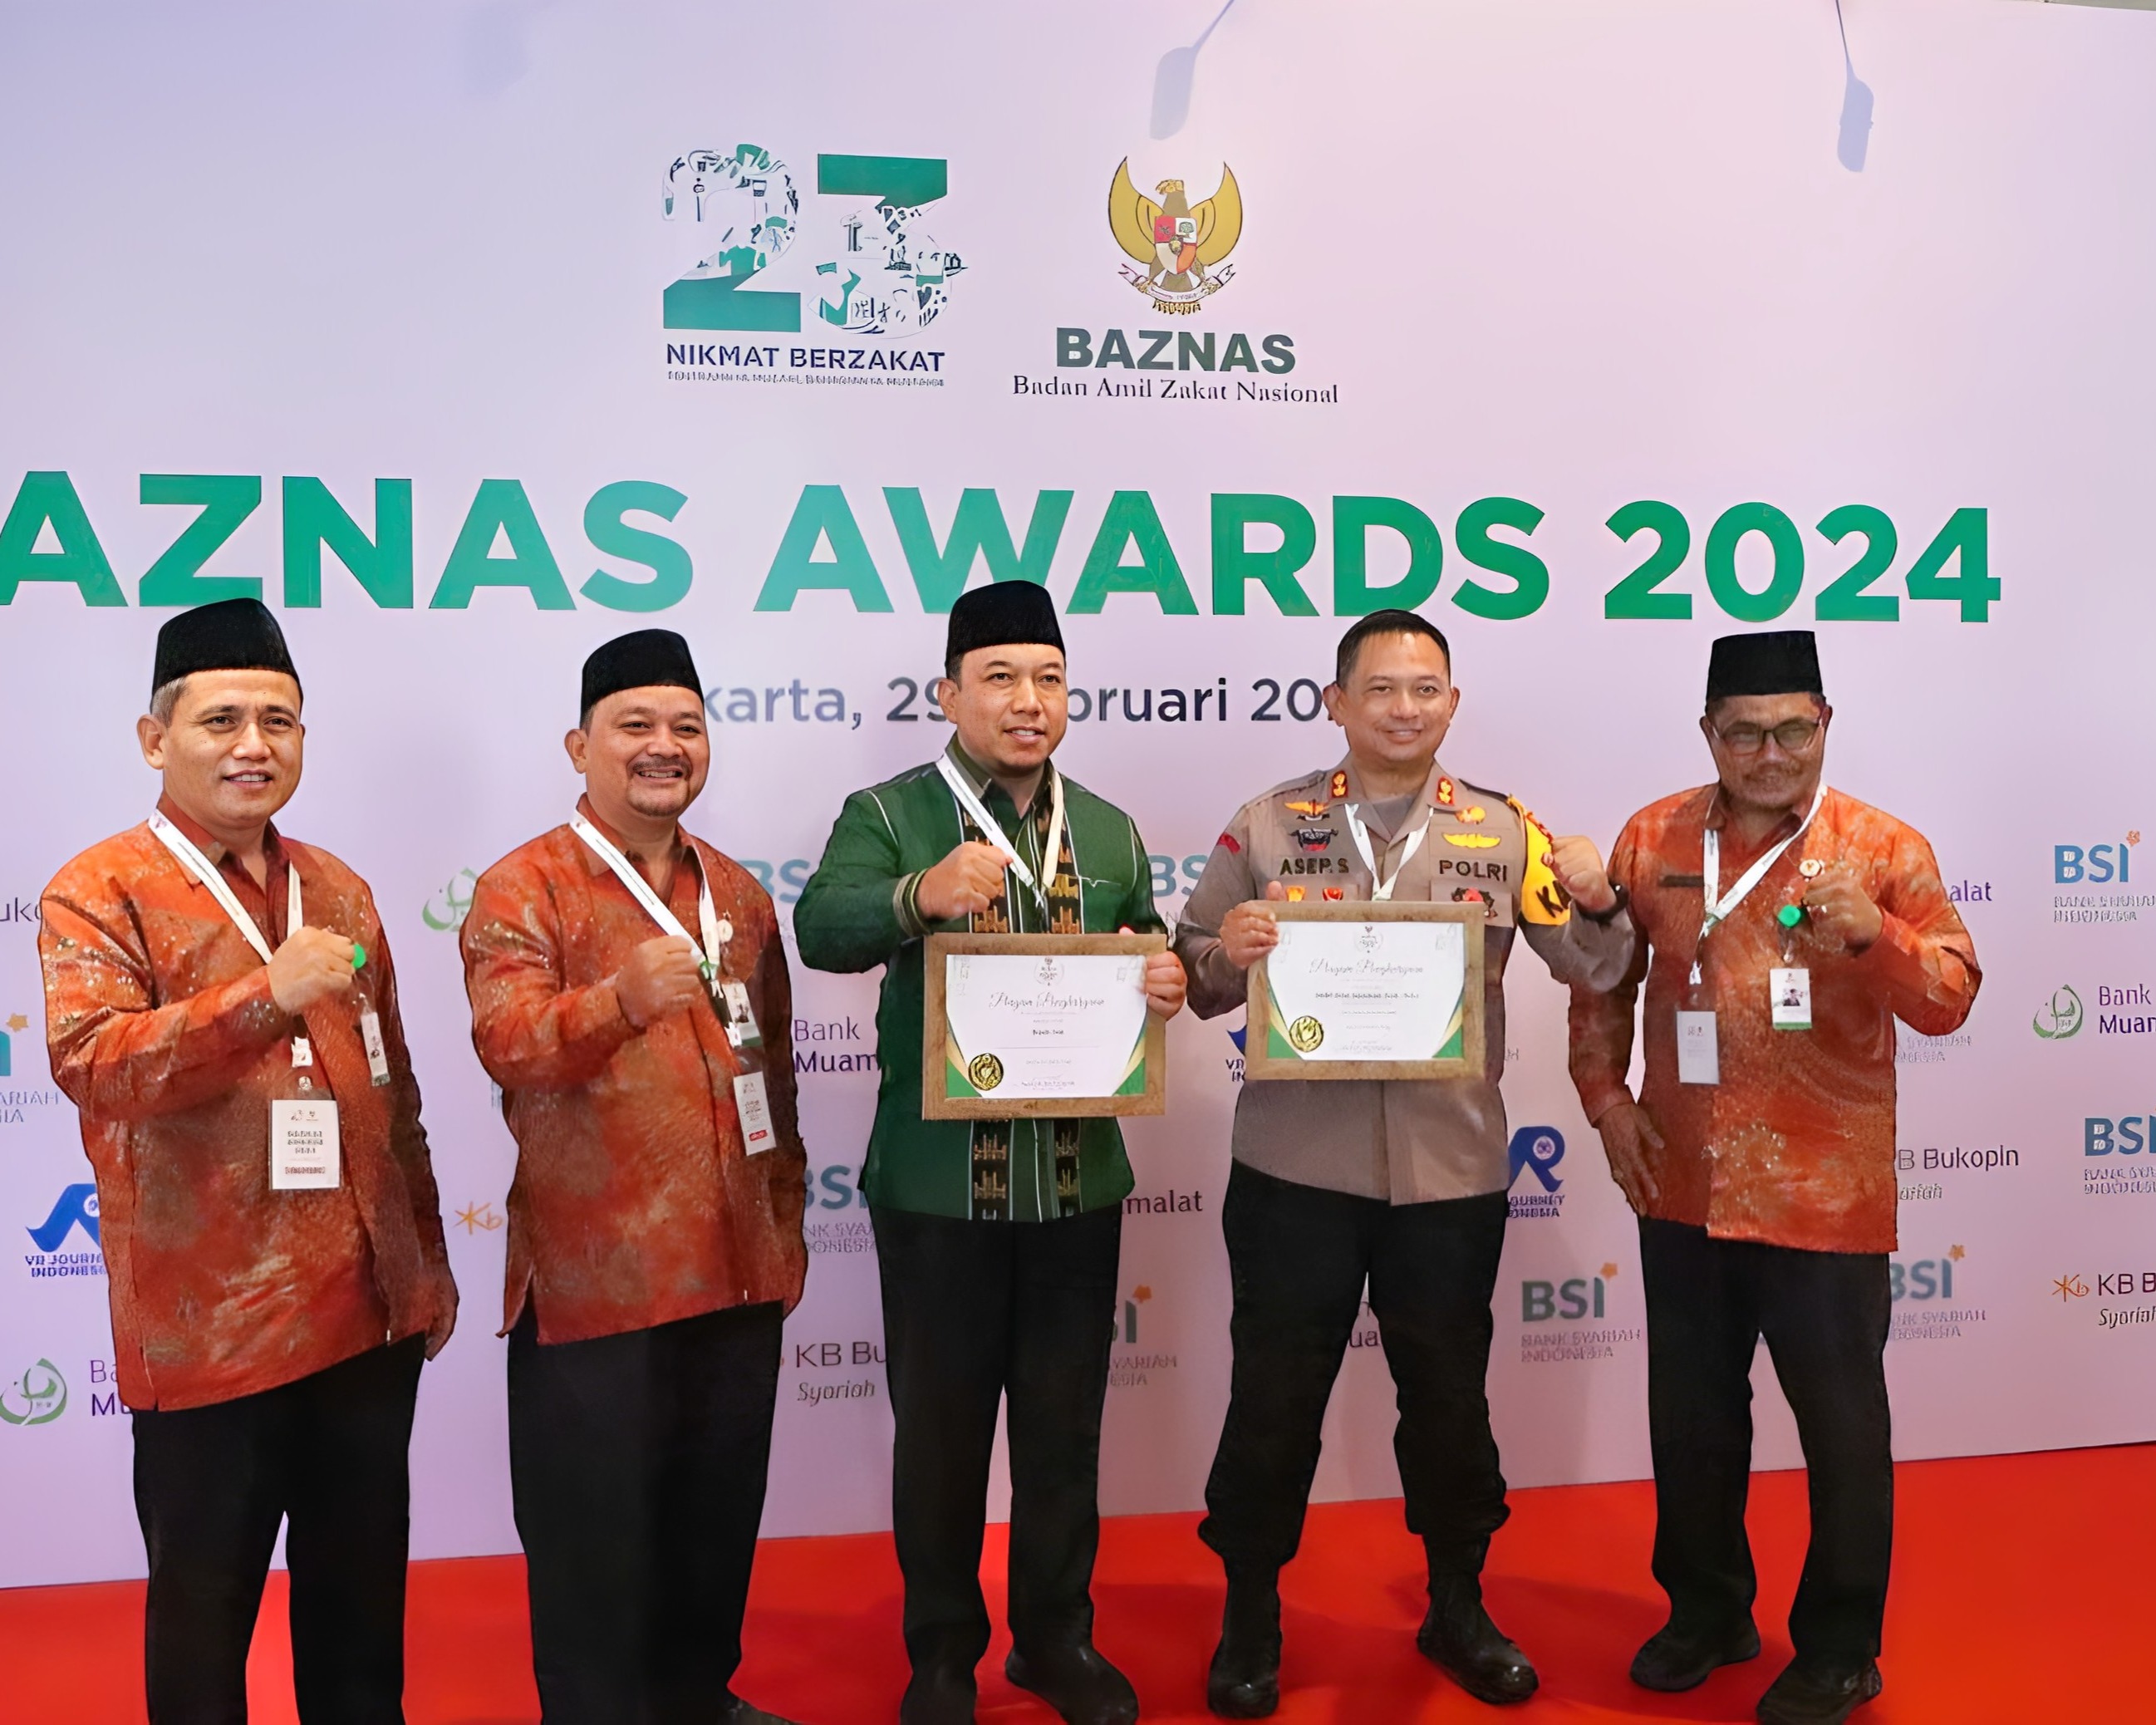 AKBP Asep Sujarwadi Terima Penghargaan Sebagai Tokoh Publik Pendukung Zakat Dalam Baznas Award 2024